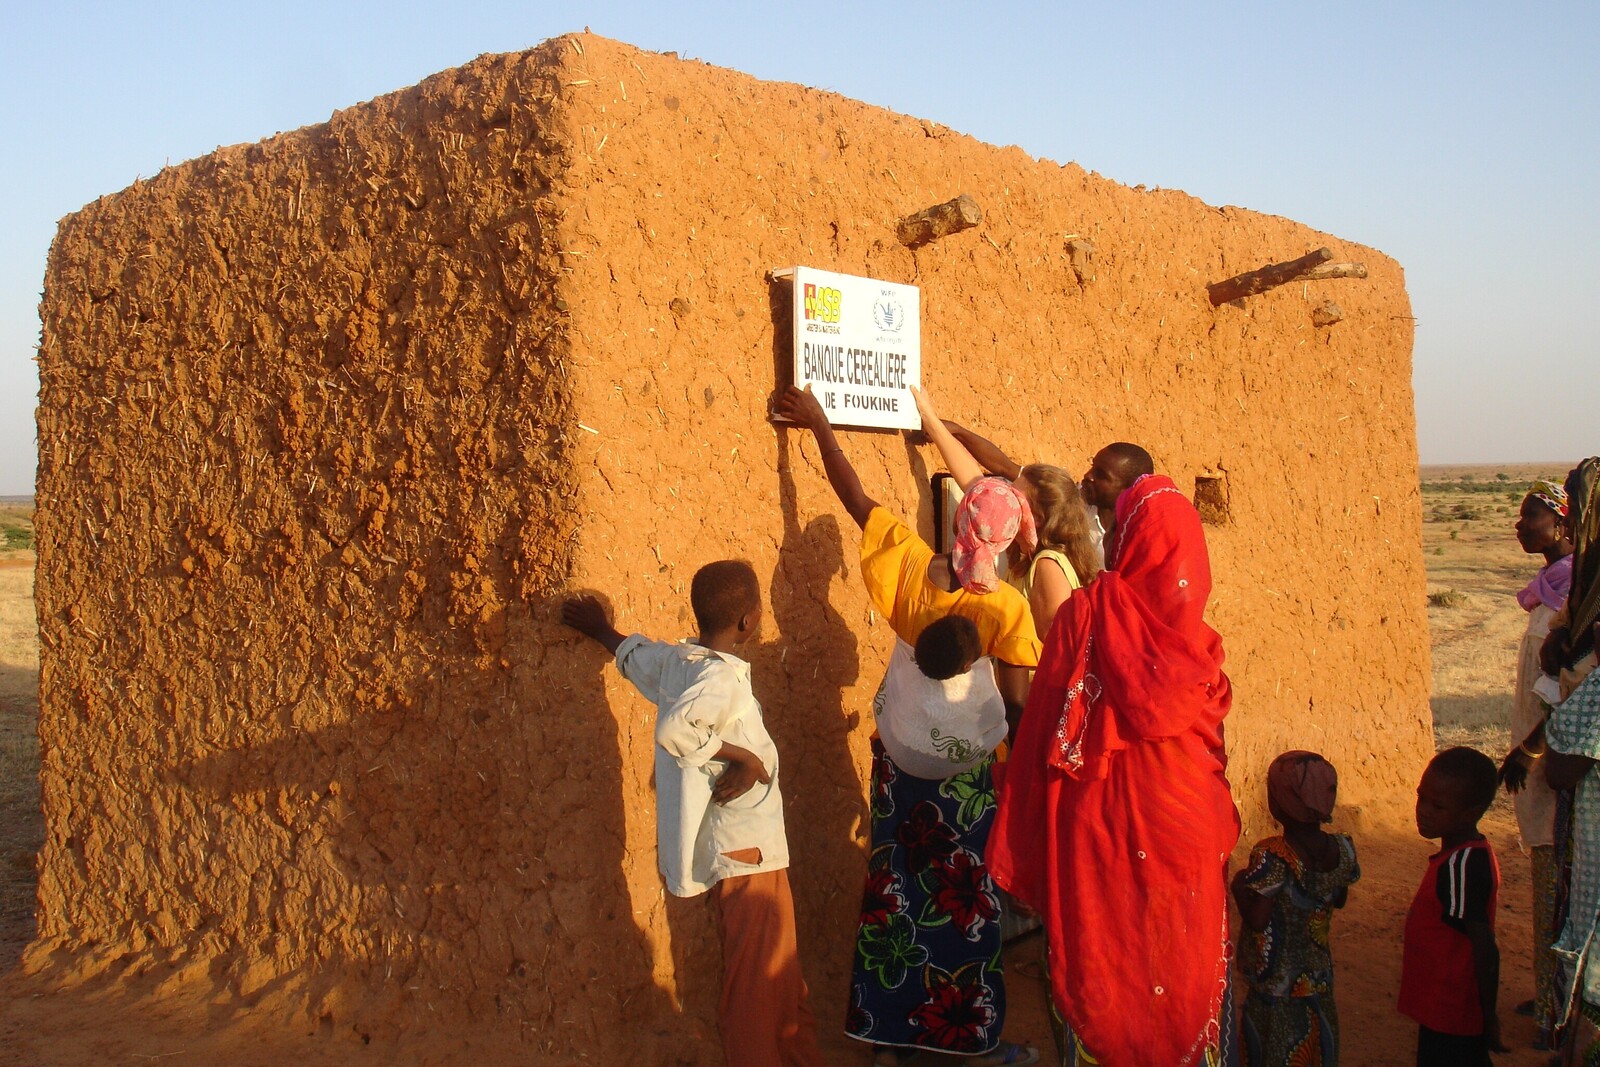 Gegen den Hunger im Niger werden Getreidebanken gebaut, die die Menschen freudig einweihen.